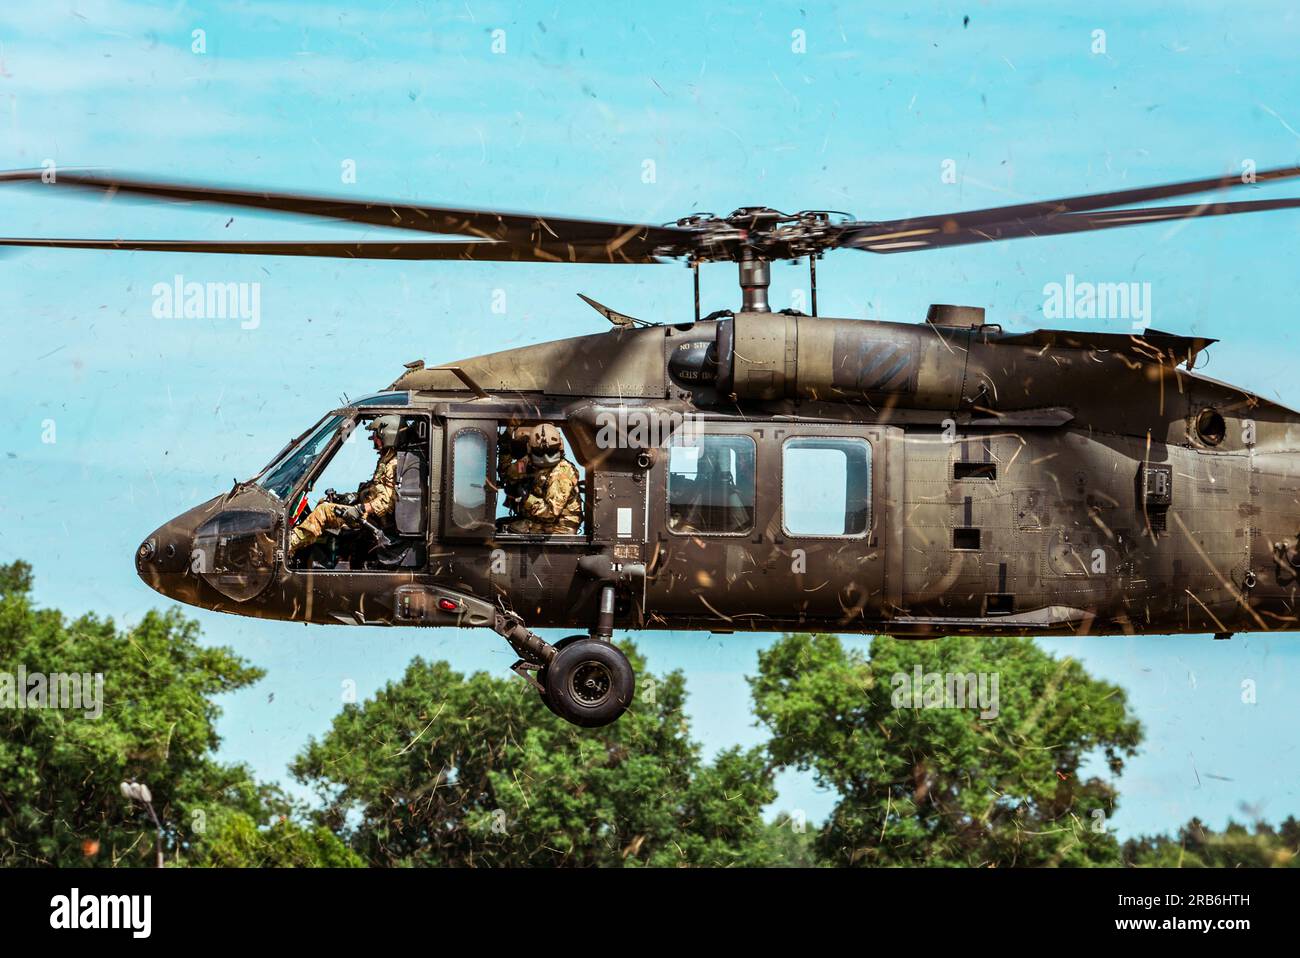 UN U.S. L'Army UH-60 vola sopra una striscia d'assalto in erba durante l'addestramento Special Operations Air-Land Integration vicino a Daugavpils, Lettonia, 28 giugno 2023. La prontezza operativa è fondamentale per i partenariati, la risposta alle crisi, la deterrenza e il sostegno agli Alleati e ai partner. (STATI UNITI Foto Air Force di Tech. Sgt. Izabella Workman) Foto Stock